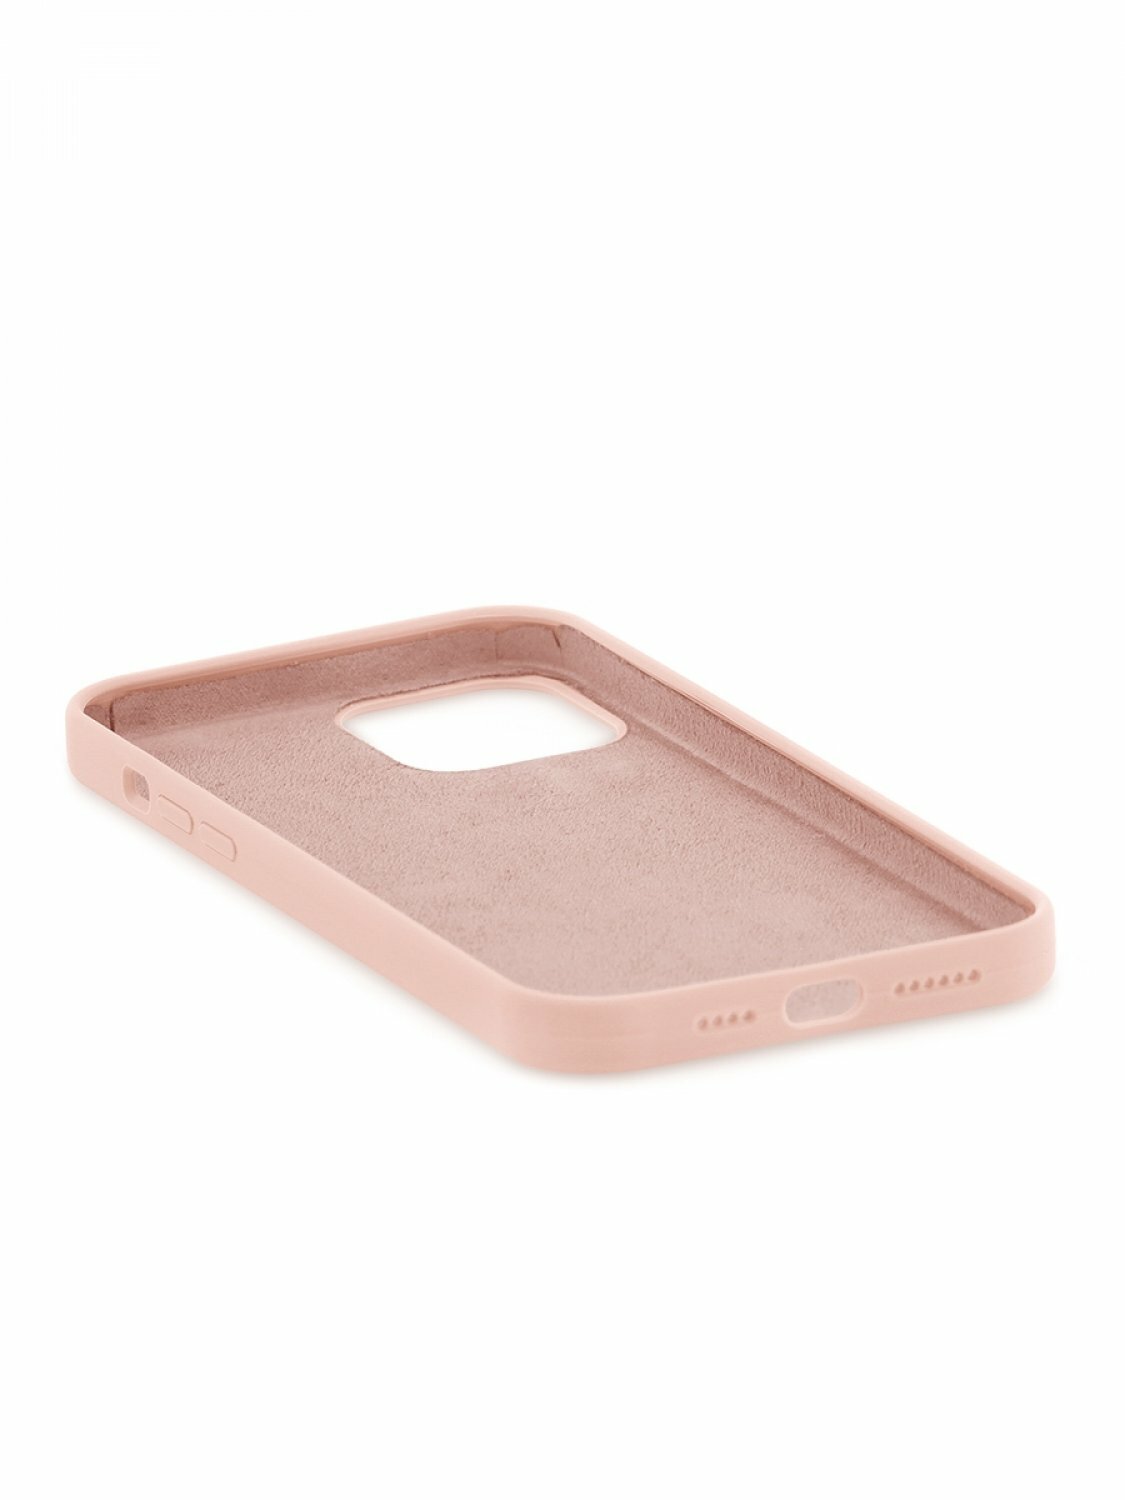 Чехол для iPhone 12 Pro Max Kruche Silicone Pink sand, противоударный пластиковый кейс, защитный силиконовый бампер, софттач накладка с защитой камеры